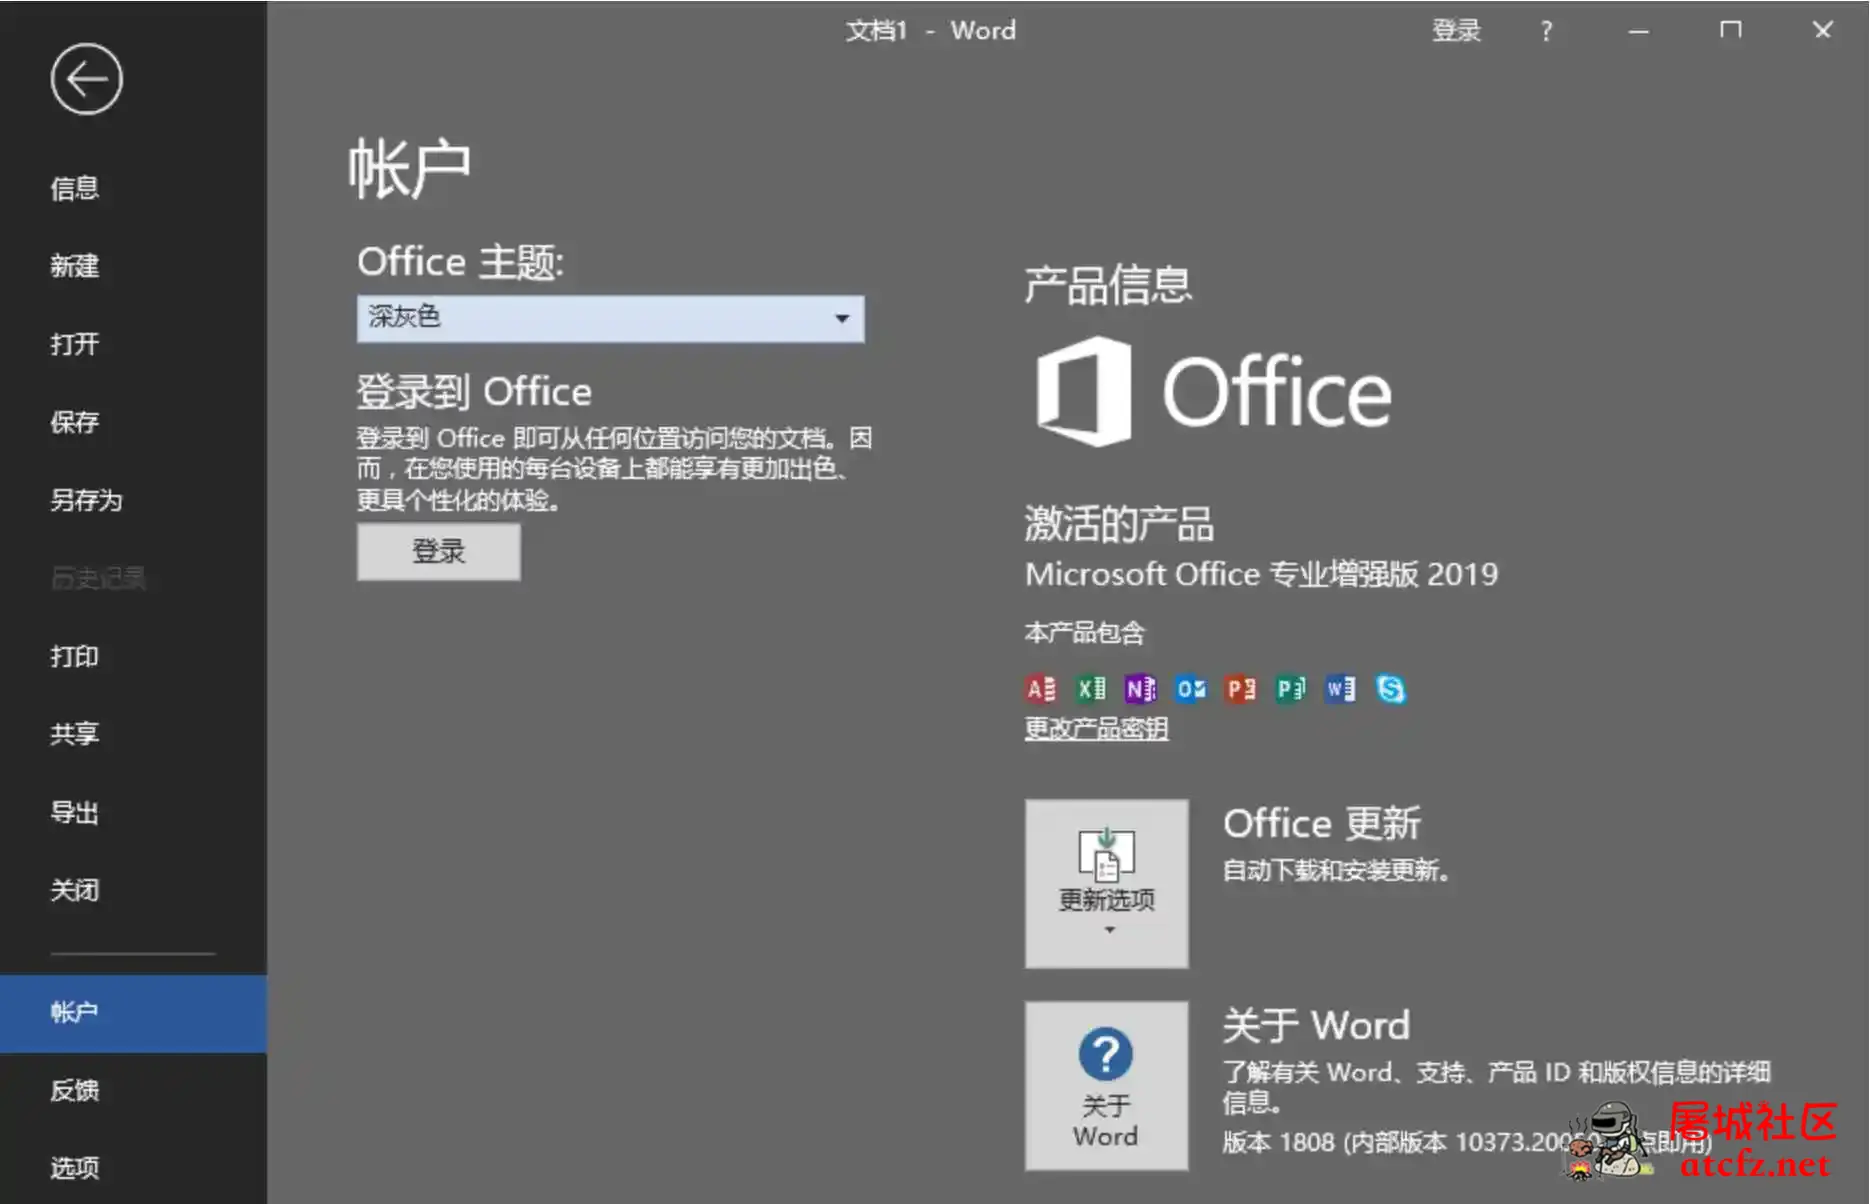 微软Office2019批量授权版批量授权商业版工具 屠城辅助网www.tcfz1.com3665